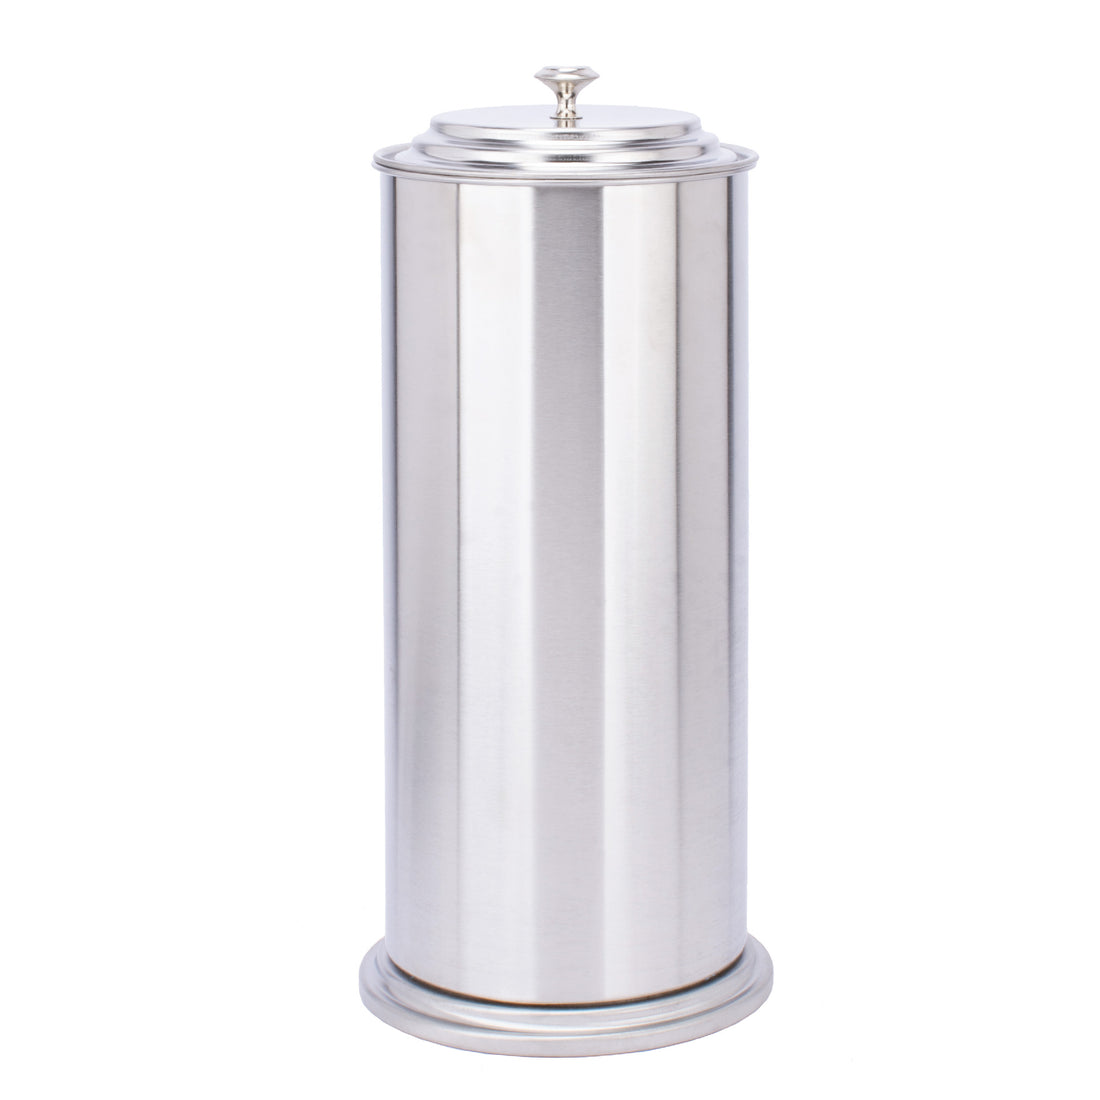 Freestanding Extra Large Toilet Paper Holder  (Stainless Steel Finish) - Utility sinks vanites Tehila